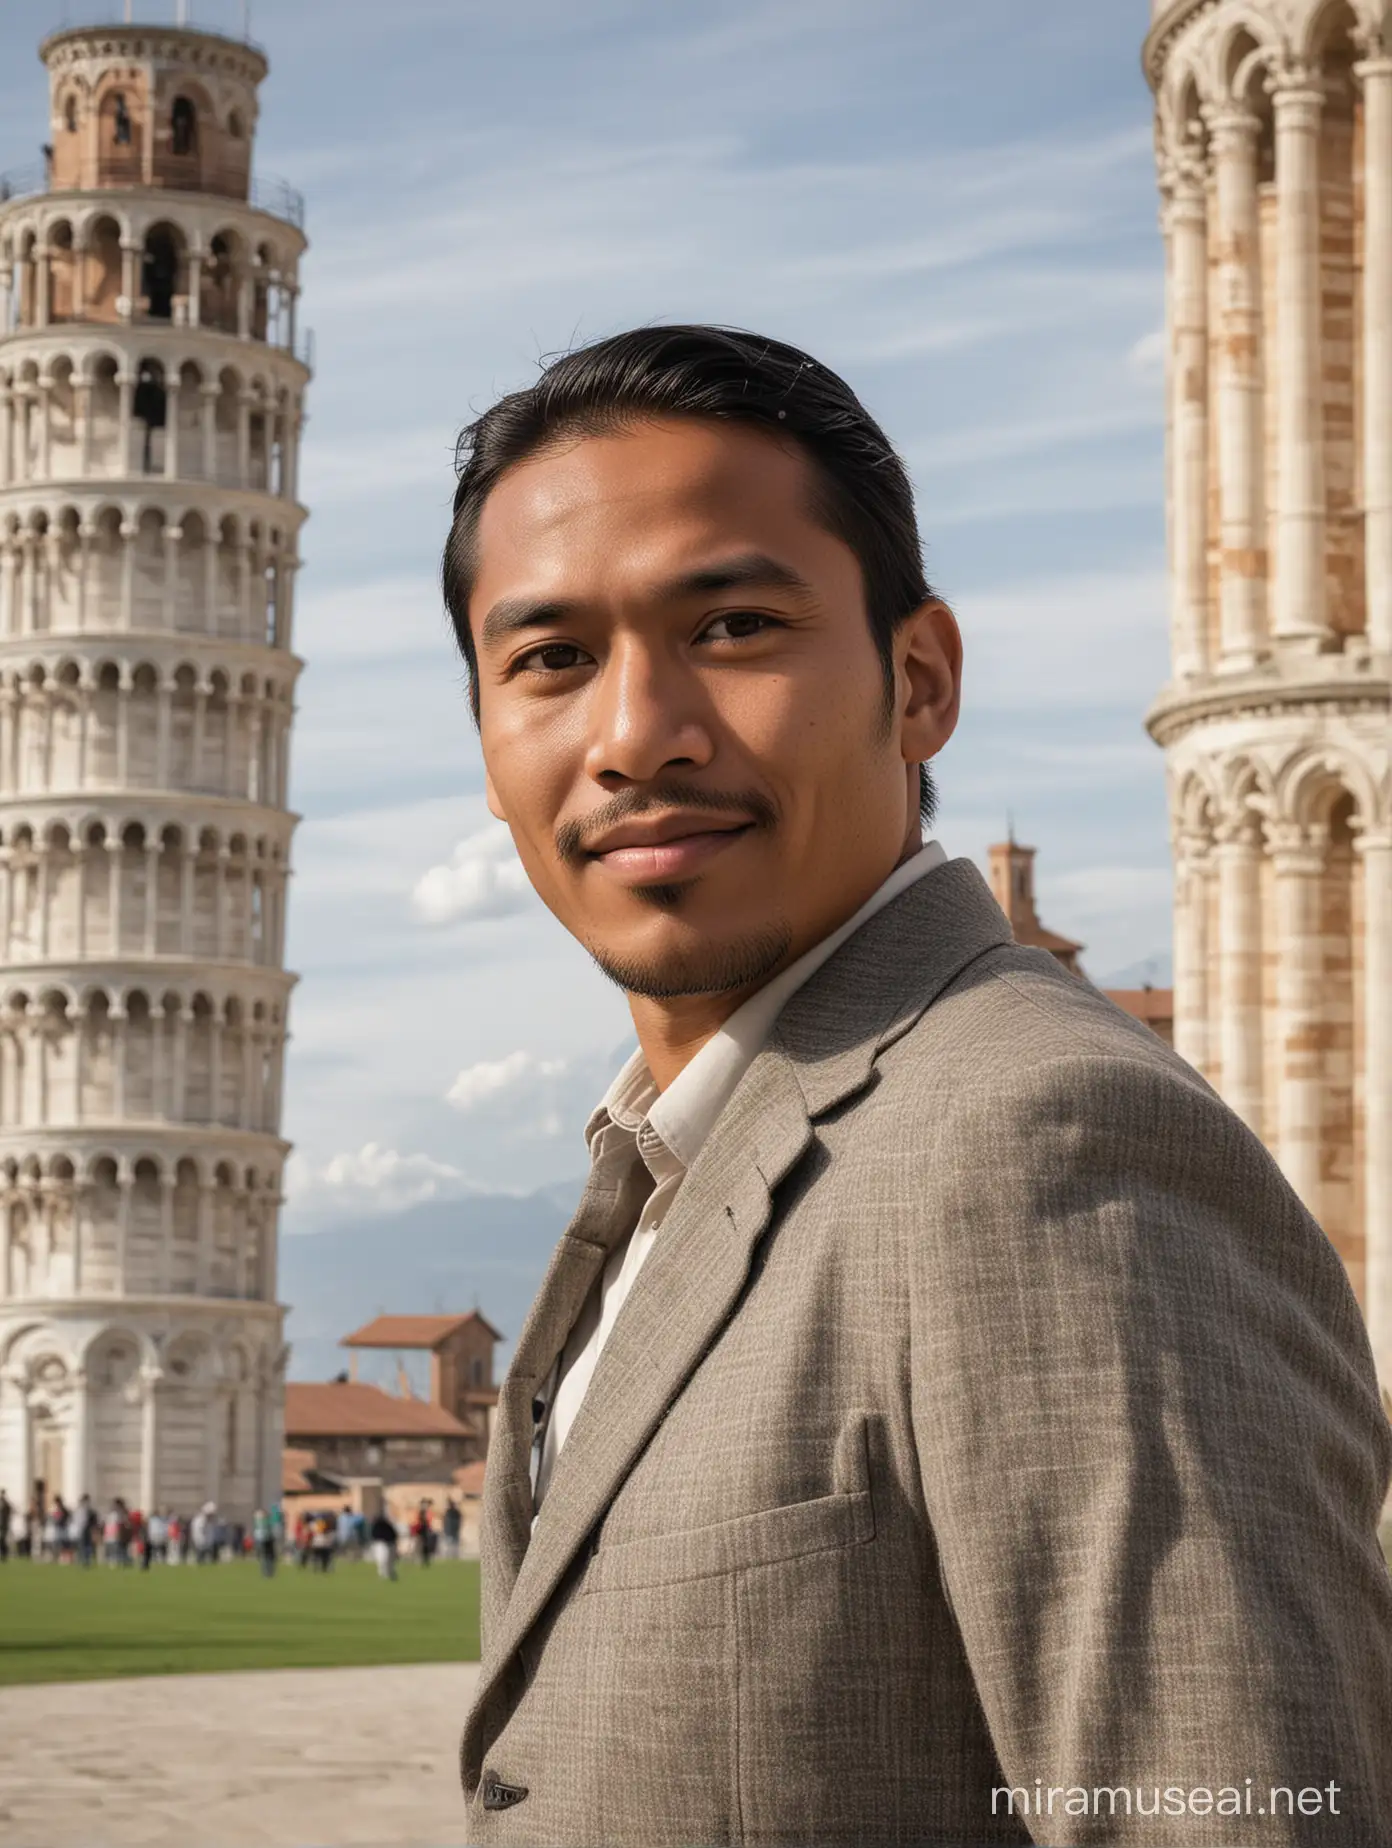 Fotografi Pria indonesia dengan latar belakang menara miring Pisa